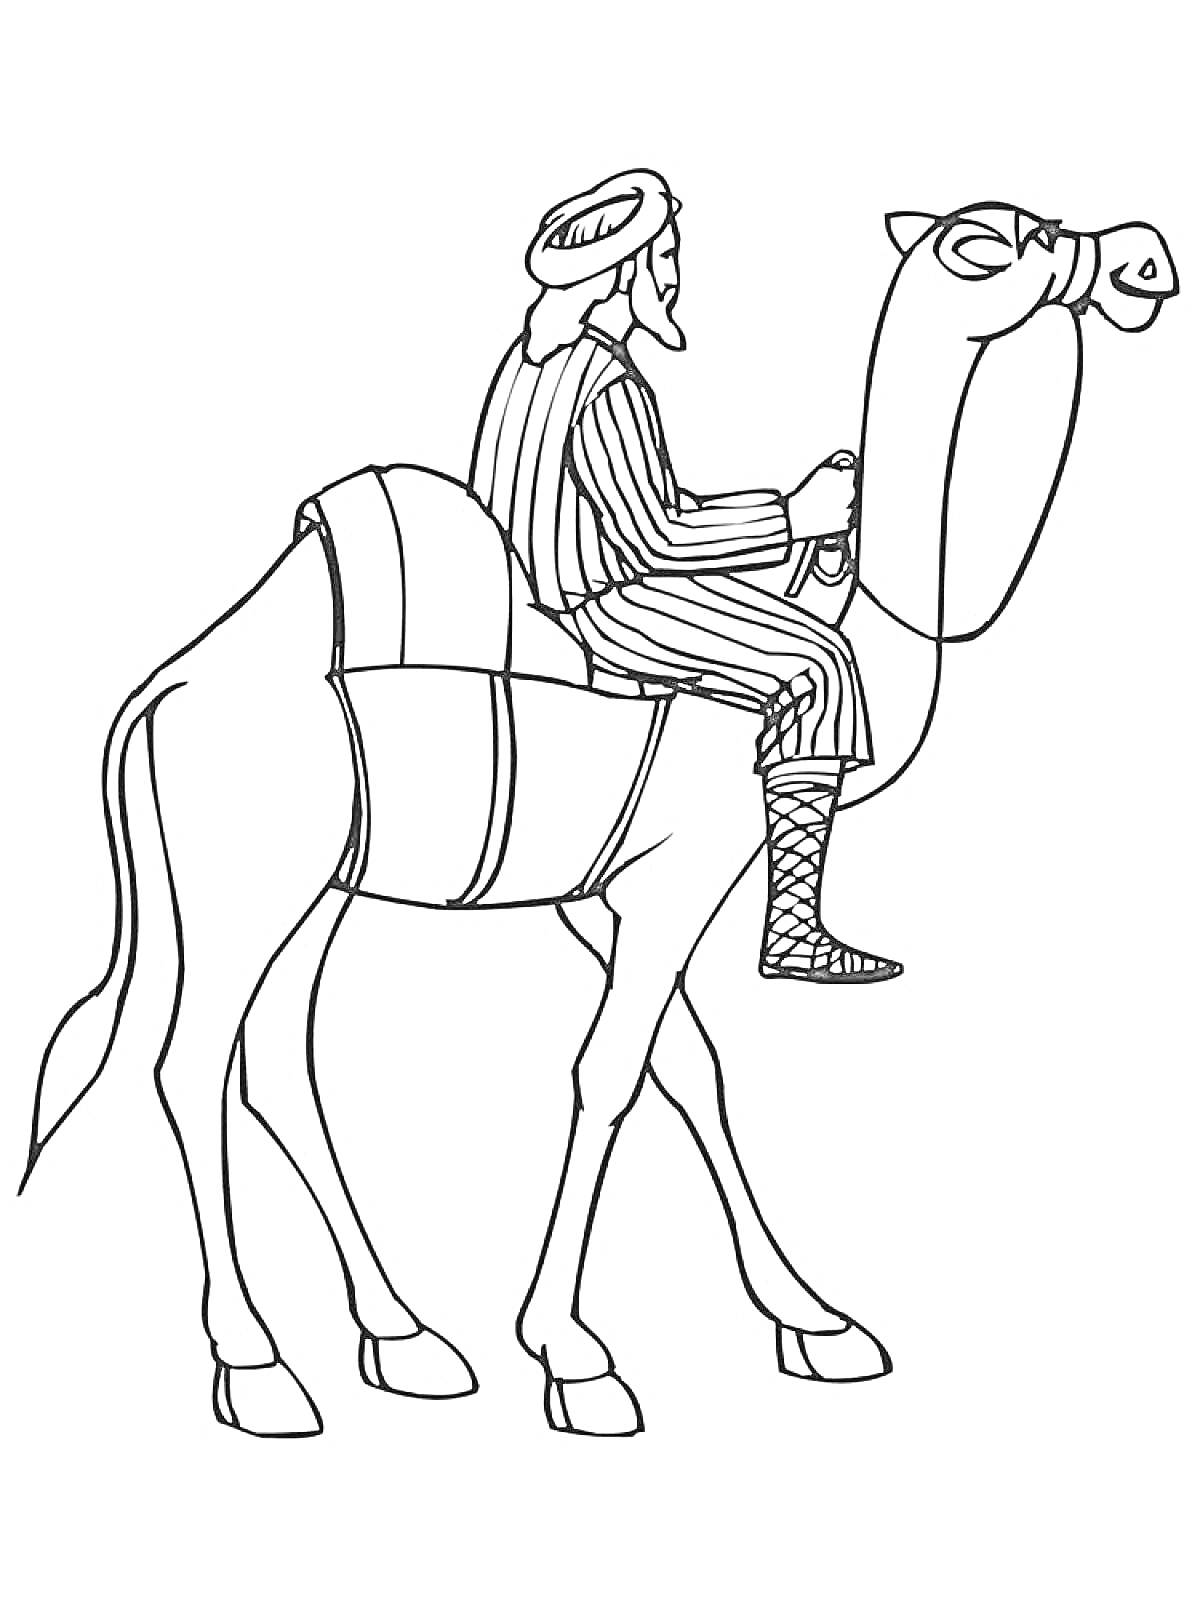 Раскраска Всадник на верблюде в традиционной одежде с головным убором и завязанной обувью